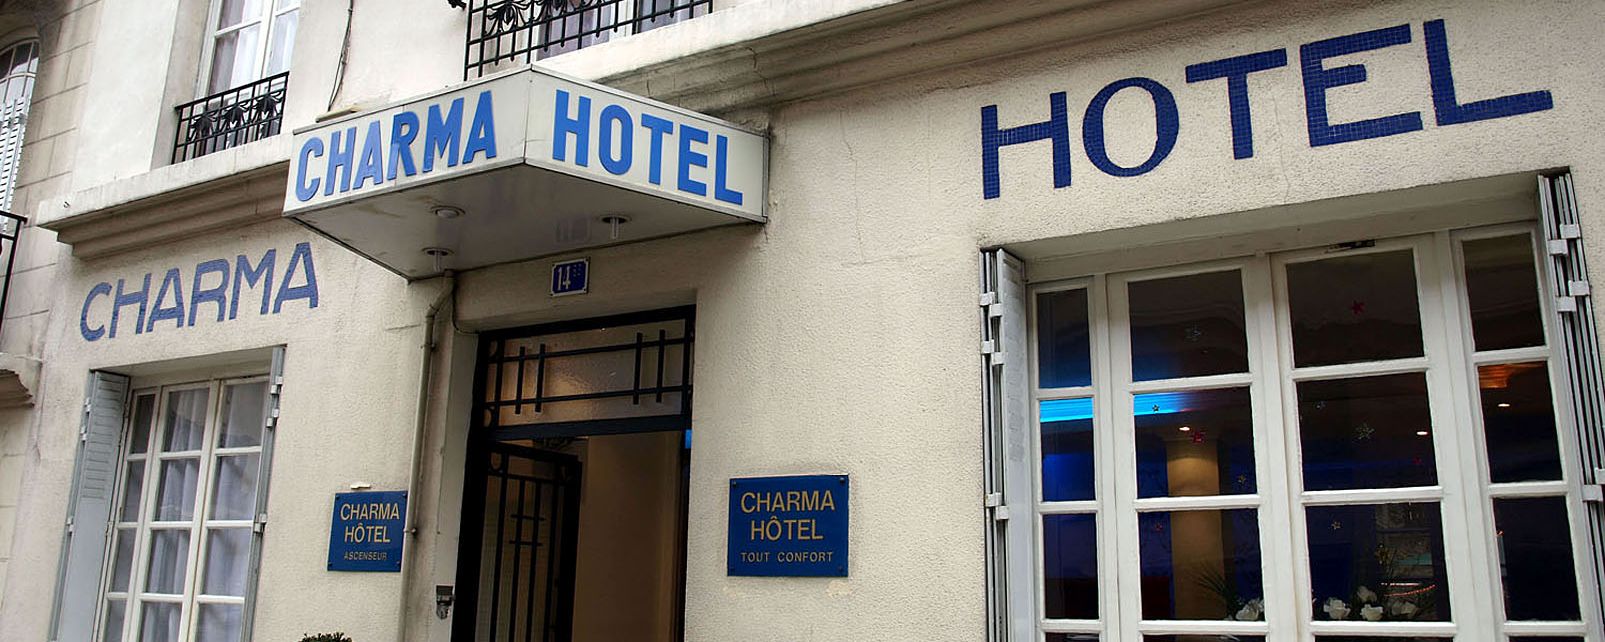 Hotel Charma